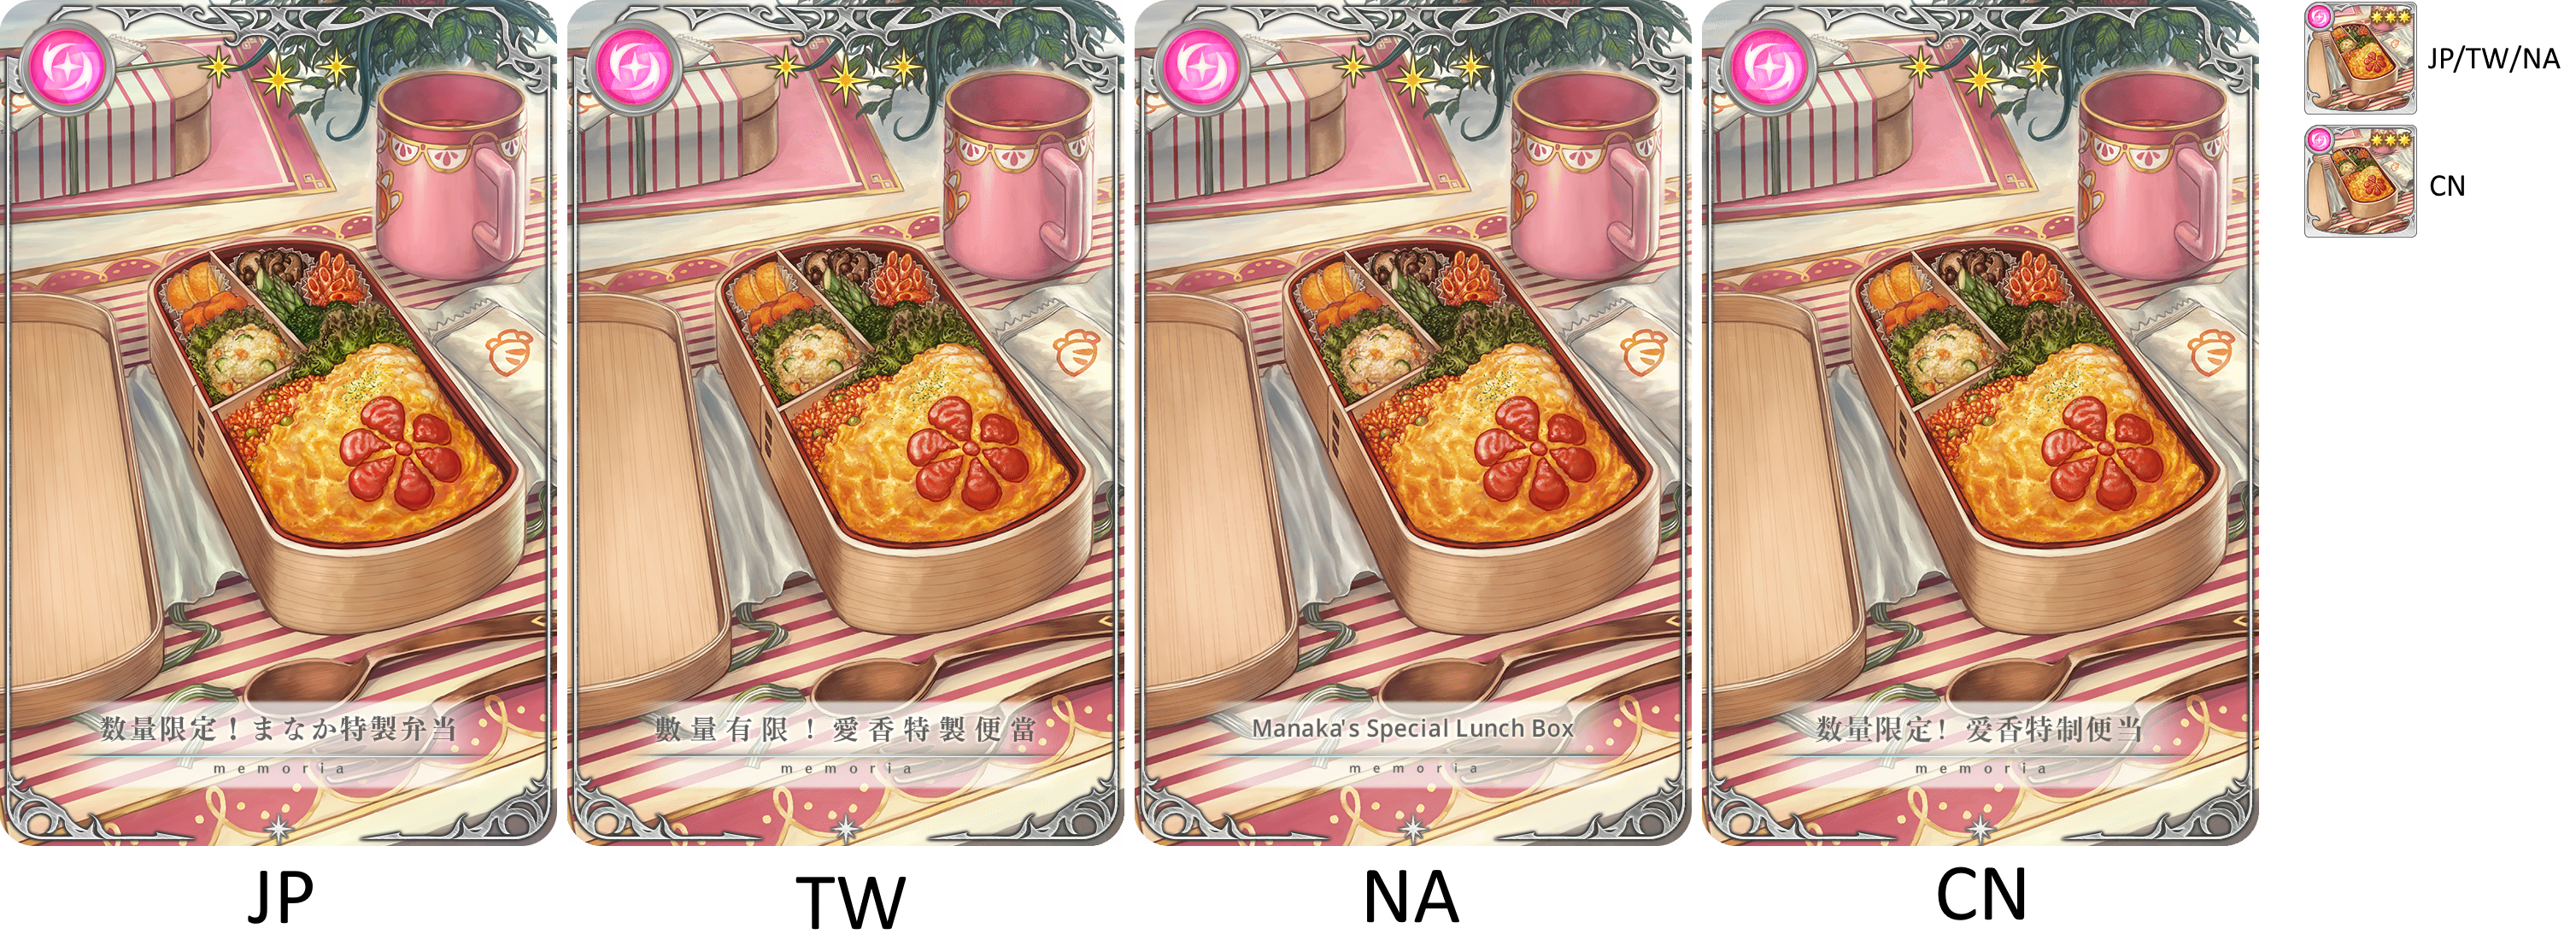 Limited Quantity! Manaka's Special Bento Box [memoria_1091]